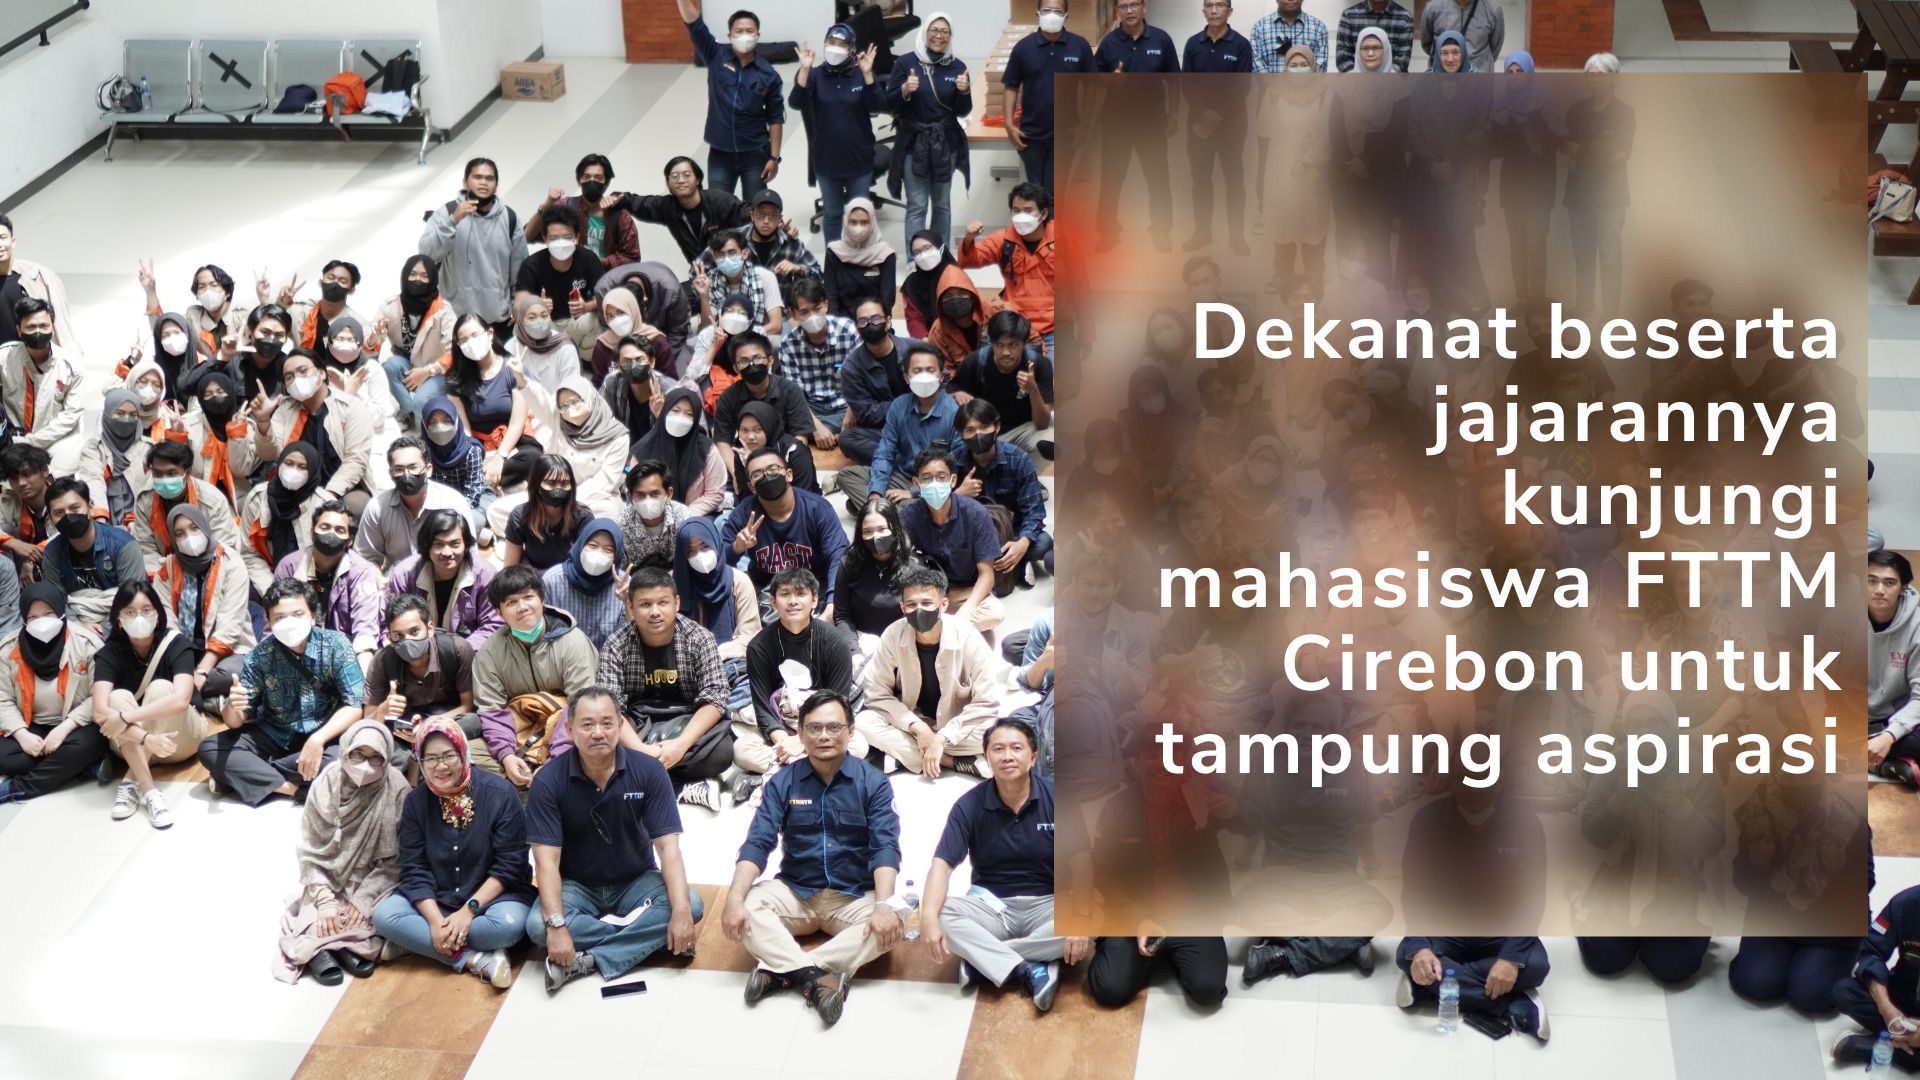 Dekanat beserta jajarannya kunjungi mahasiswa FTTM Cirebon untuk tampung aspirasi